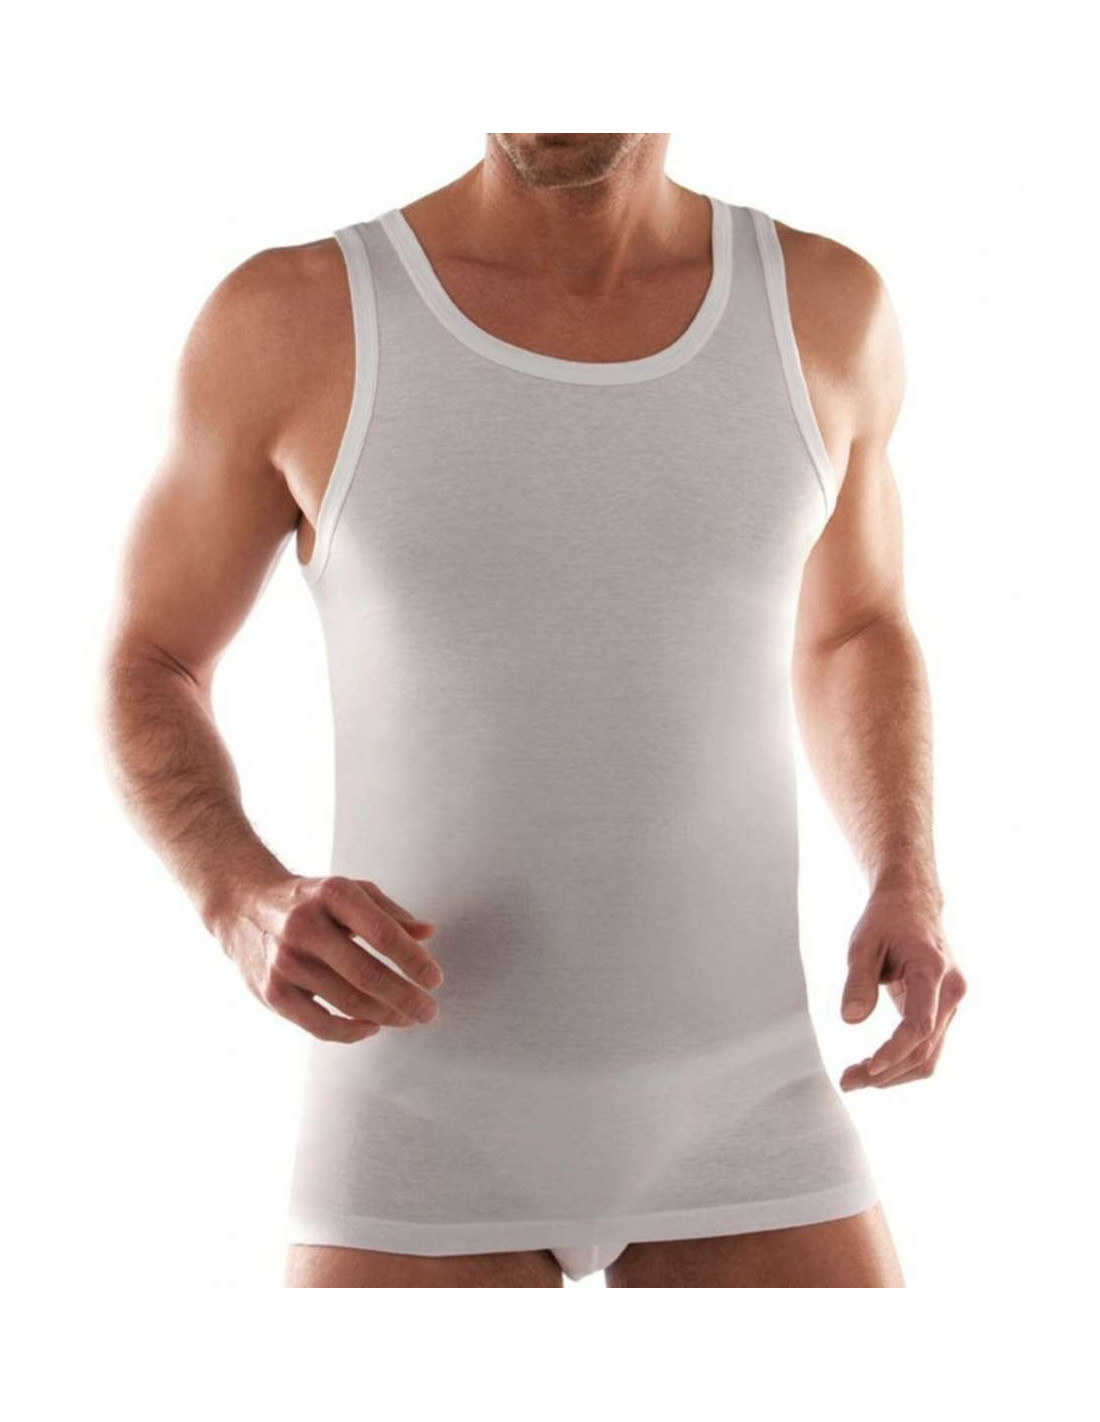 Men's cotton vest Liabel 3828-1223 - Men's cotton vest with wide  shoulder.Composition: 100% cotton Sizes:4=M5=L6=XL7=XXL - Cotton Liabel -  Liabel Uomo - Bizzarre Intimo